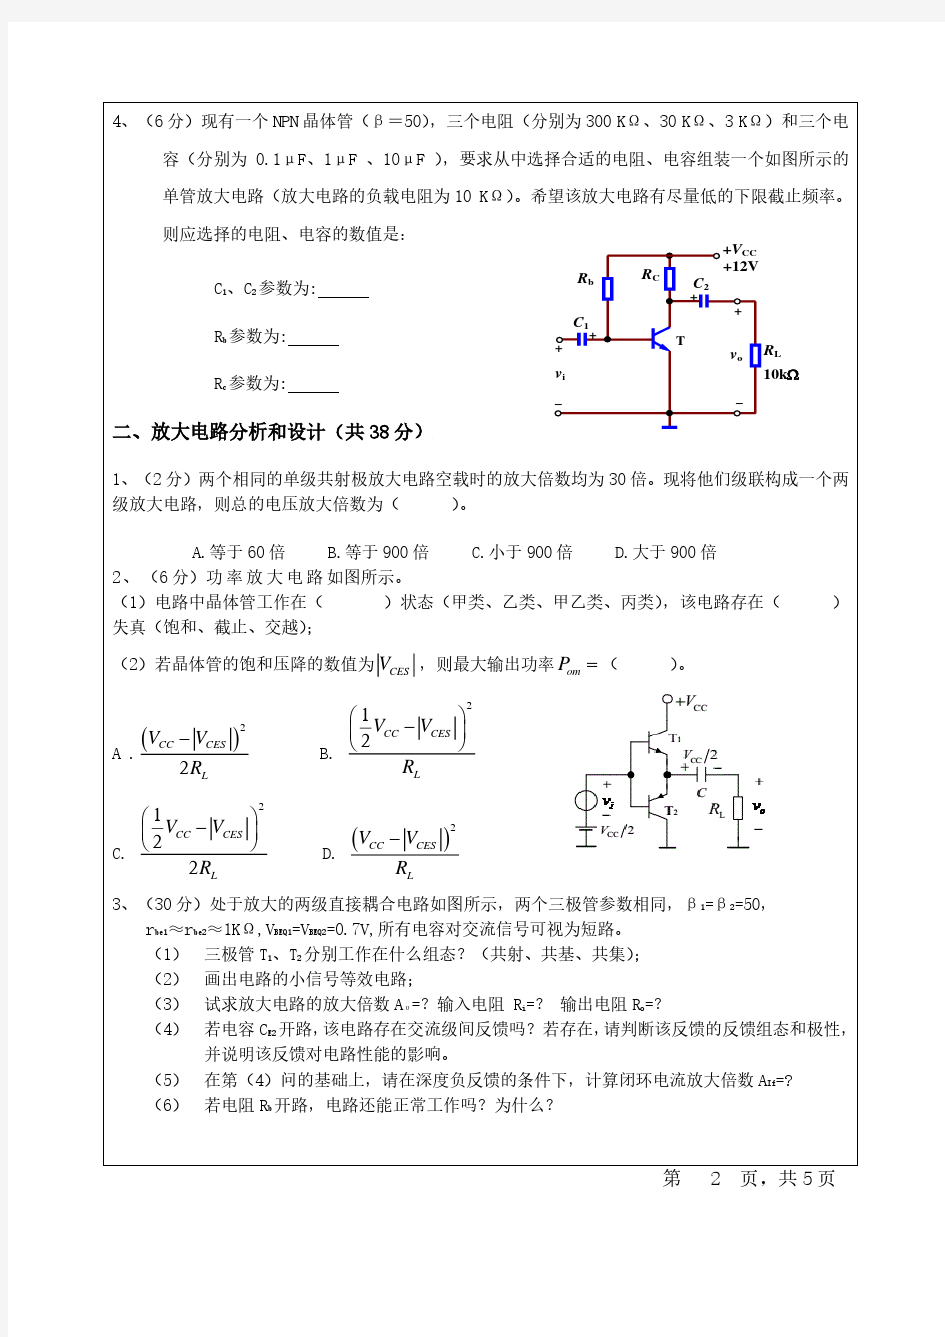 四川大学模拟电子技术考前复习用期末真题试卷(含答案)_20200219104523